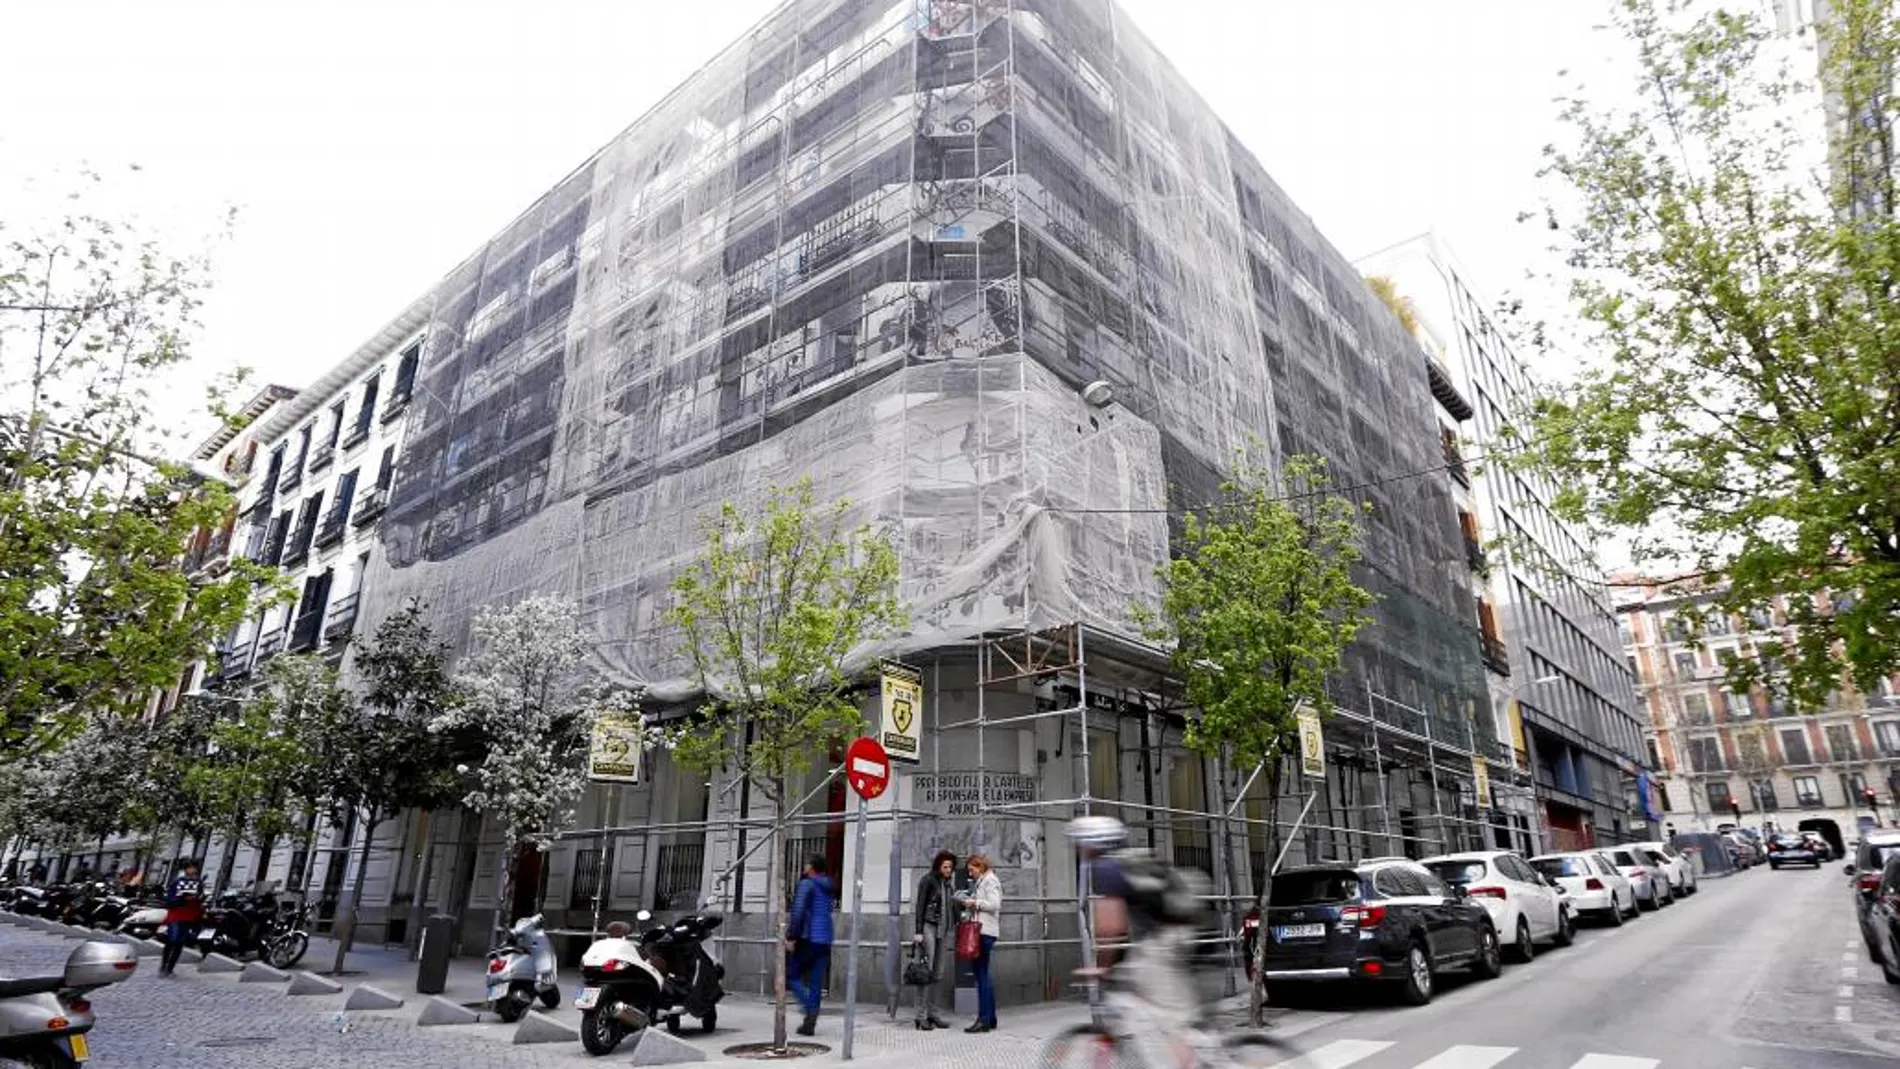 Los andamios cubren ya prácticamente toda la fachada del palacete del barrio de Justicia, decorada con frescos desde el año 2008 que ya no se aprecian desde la calle